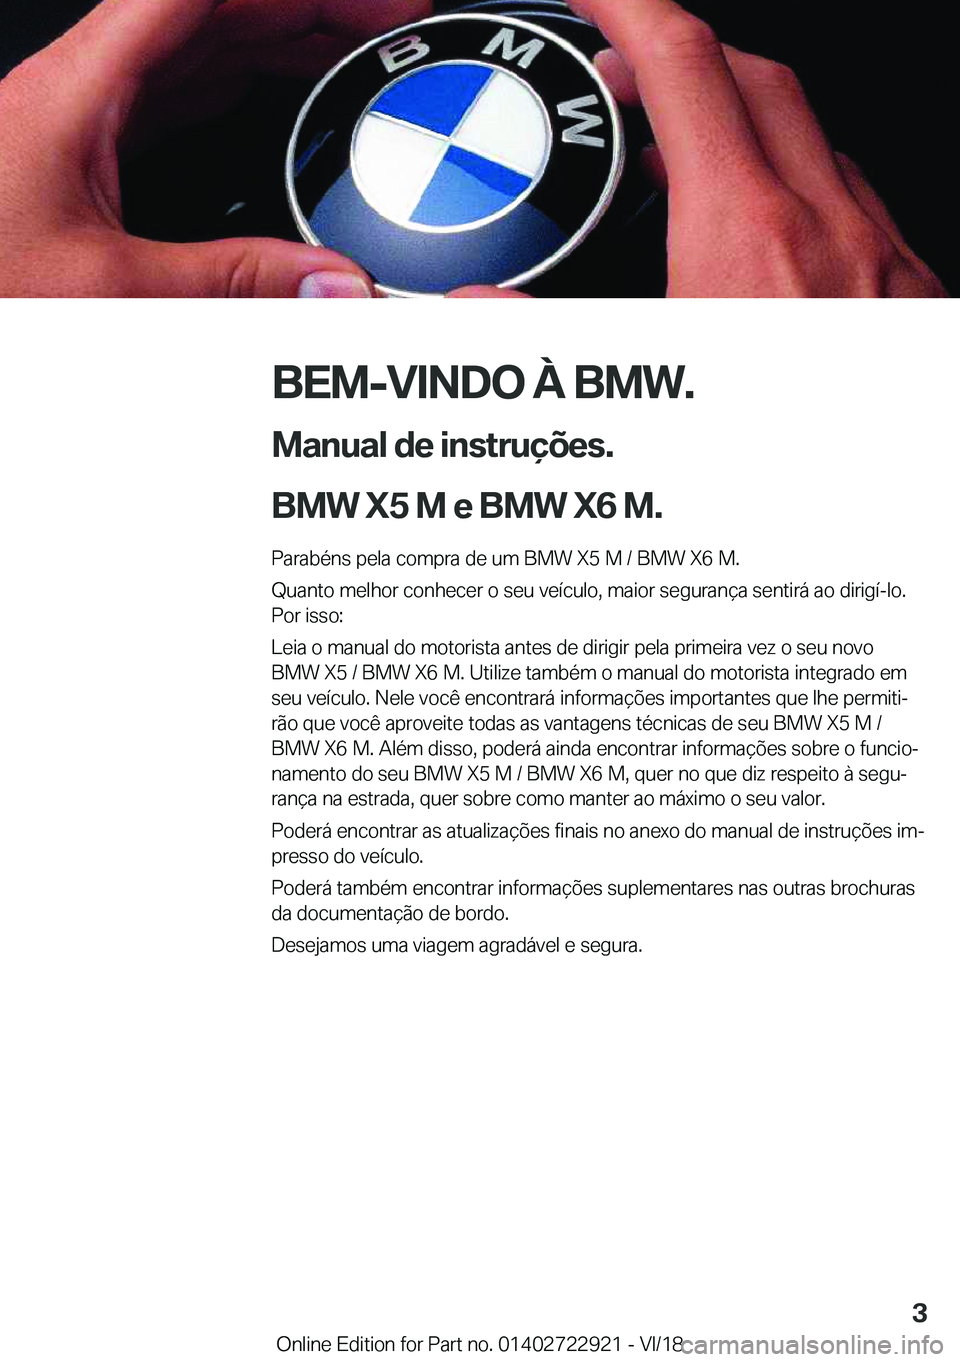 BMW X6 M 2019  Manual do condutor (in Portuguese) �B�E�M�-�V�I�N�D�O��À��B�M�W�.
�M�a�n�u�a�l��d�e��i�n�s�t�r�u�